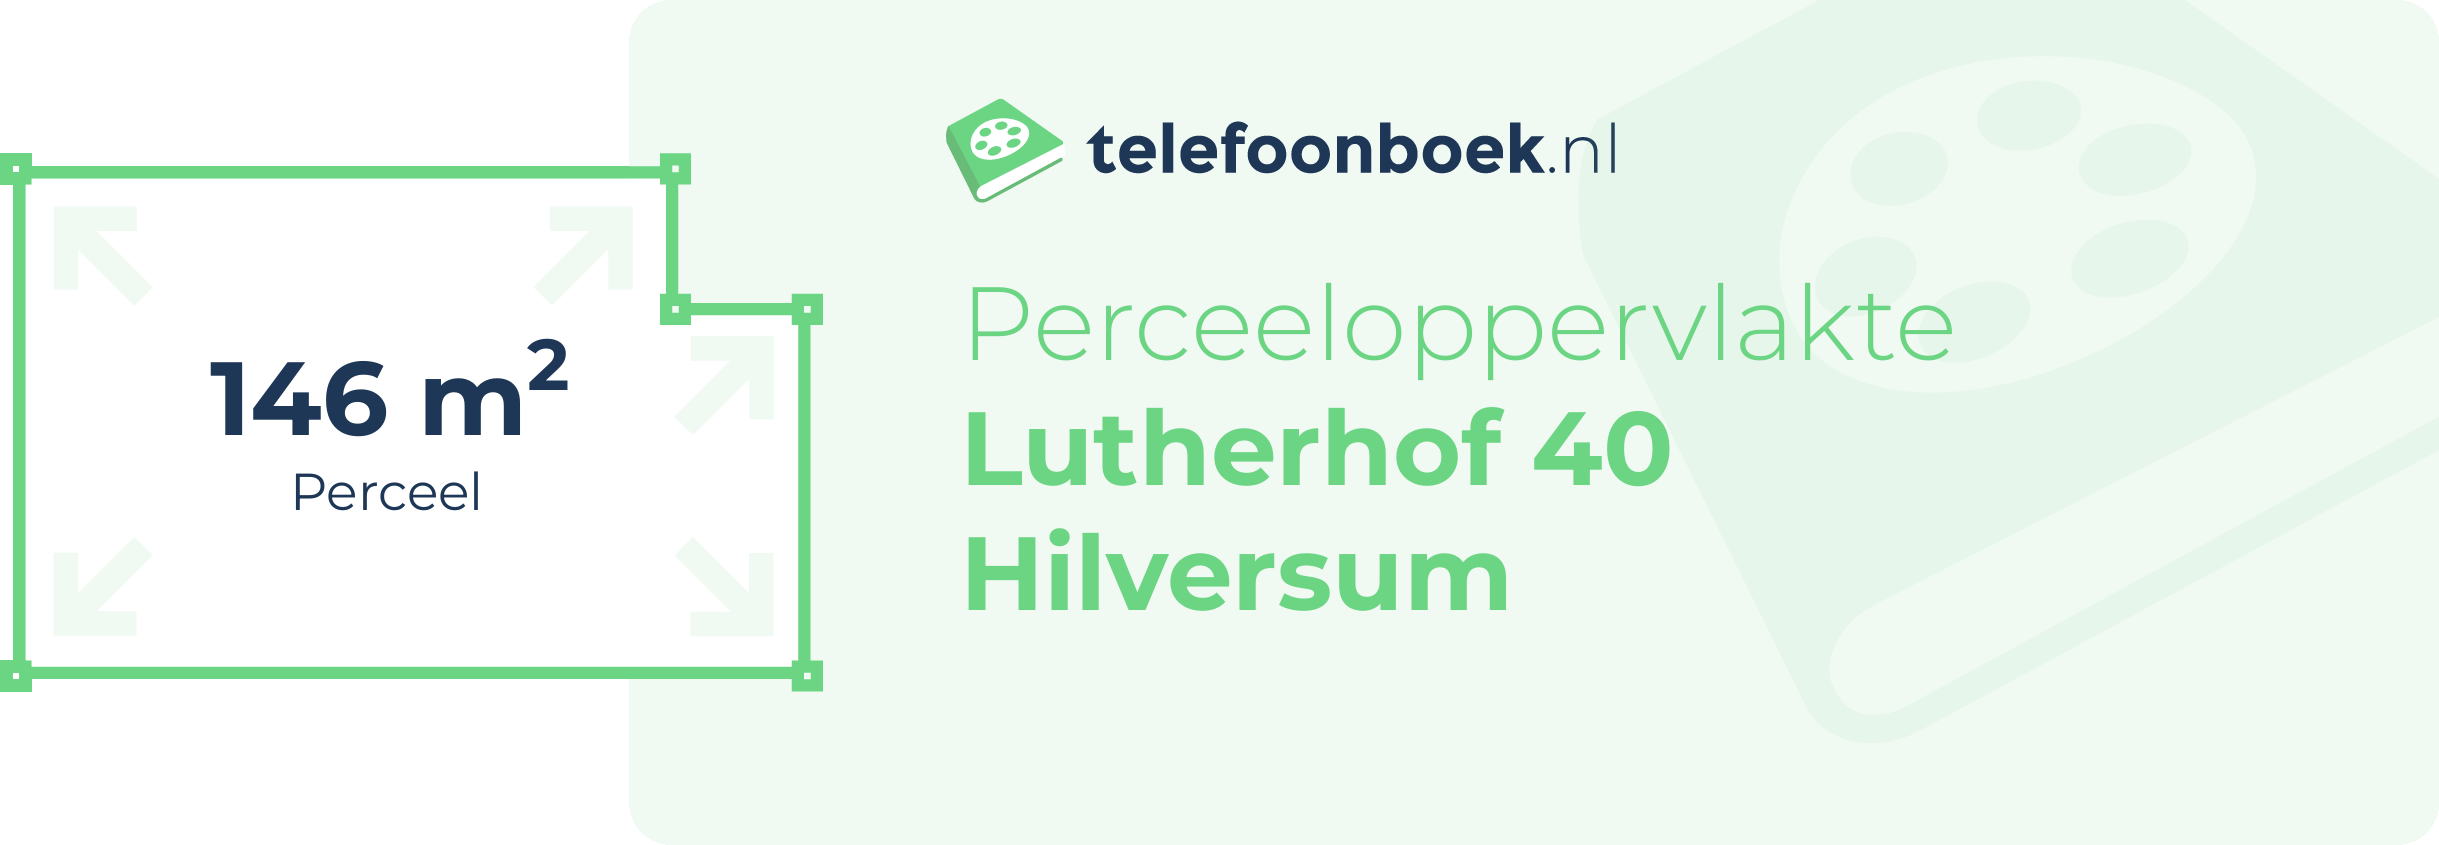 Perceeloppervlakte Lutherhof 40 Hilversum